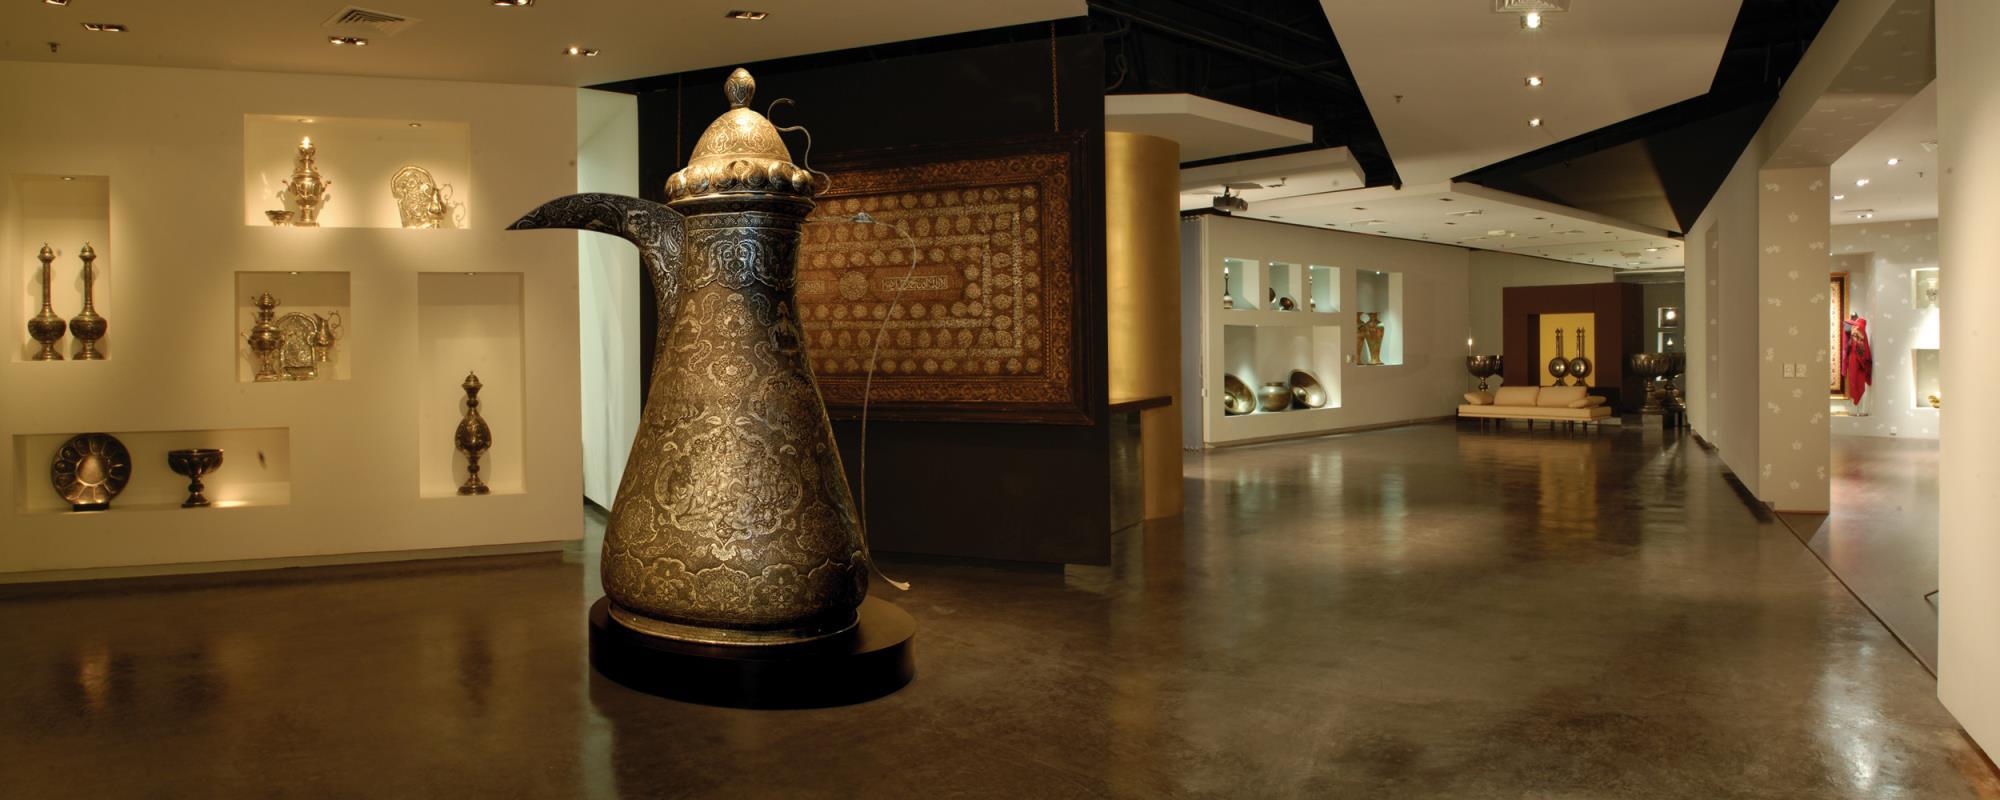 Внутри центра исламского искусства